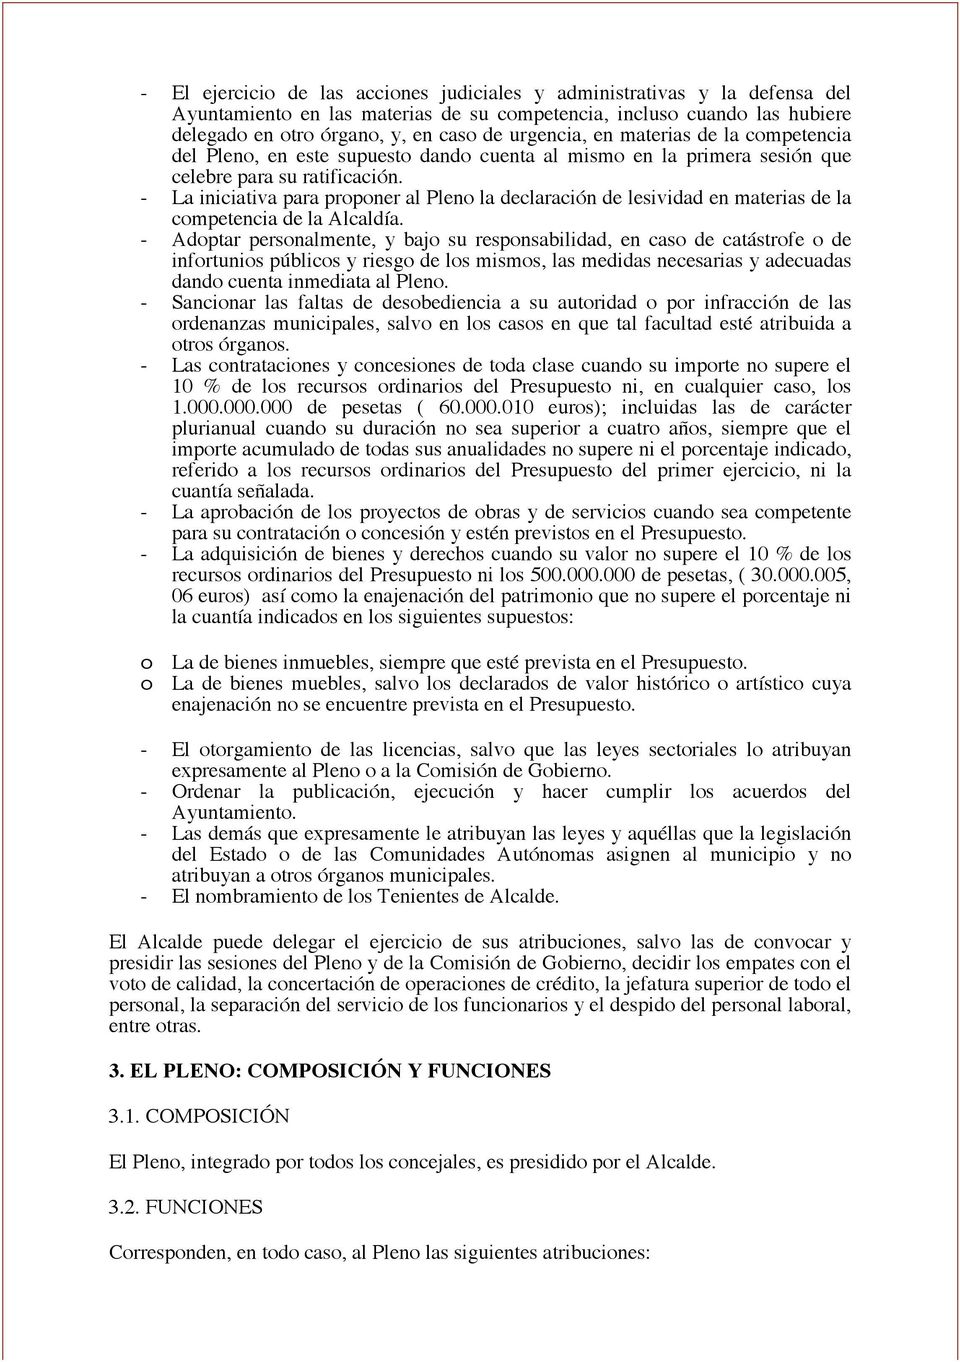 - La iniciativa para proponer al Pleno la declaración de lesividad en materias de la competencia de la Alcaldía.